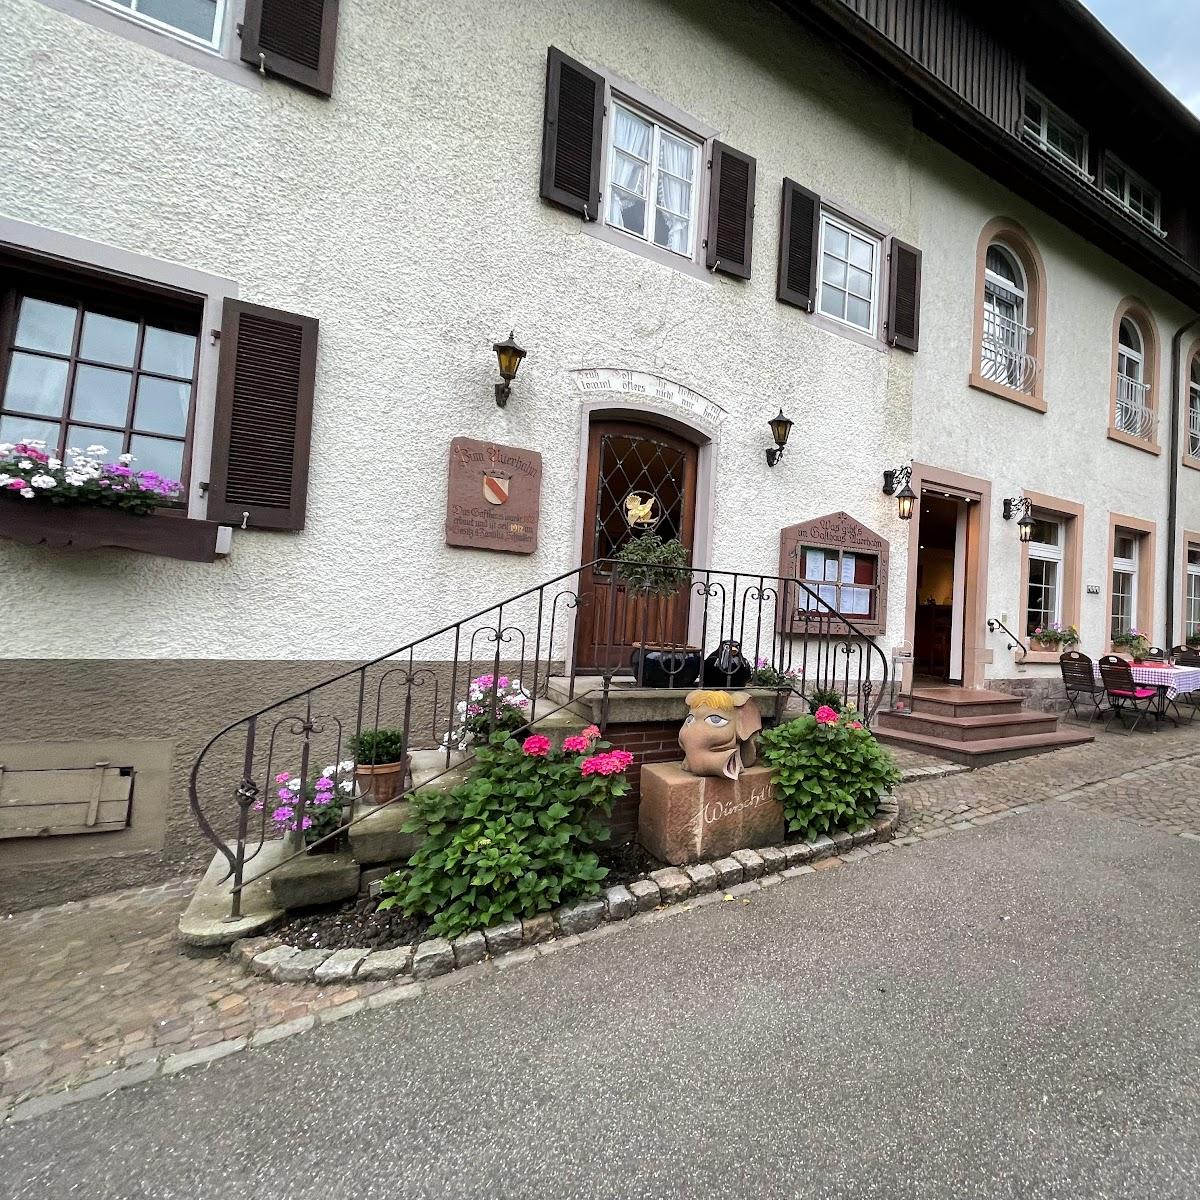 Restaurant "Gasthaus Auerhahn" in Baden-Baden